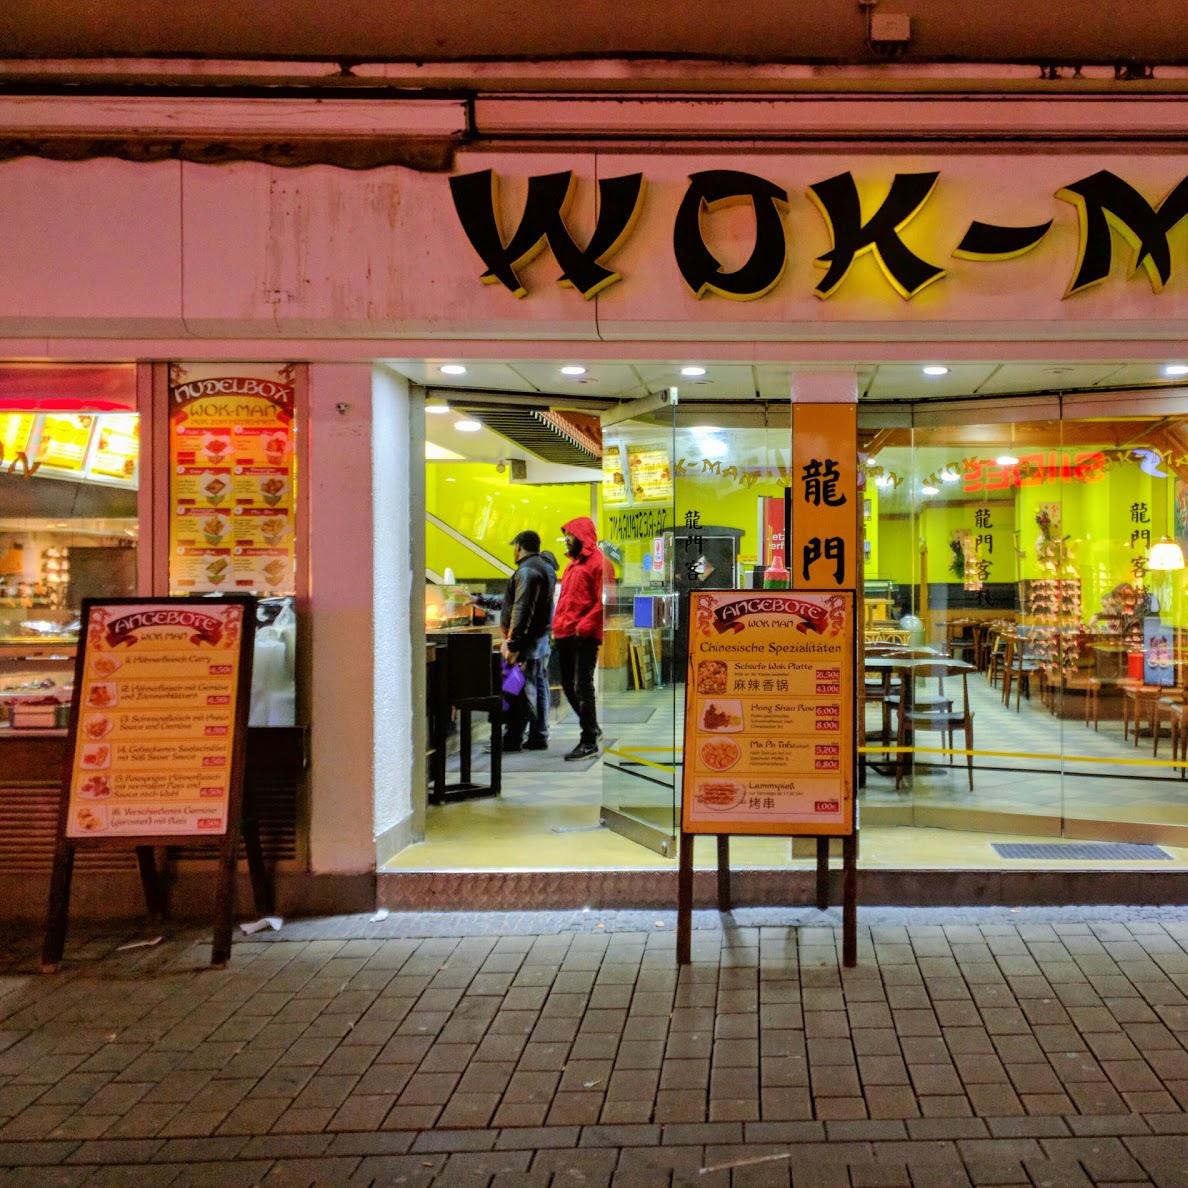 Restaurant "Wok-Man" in Dortmund